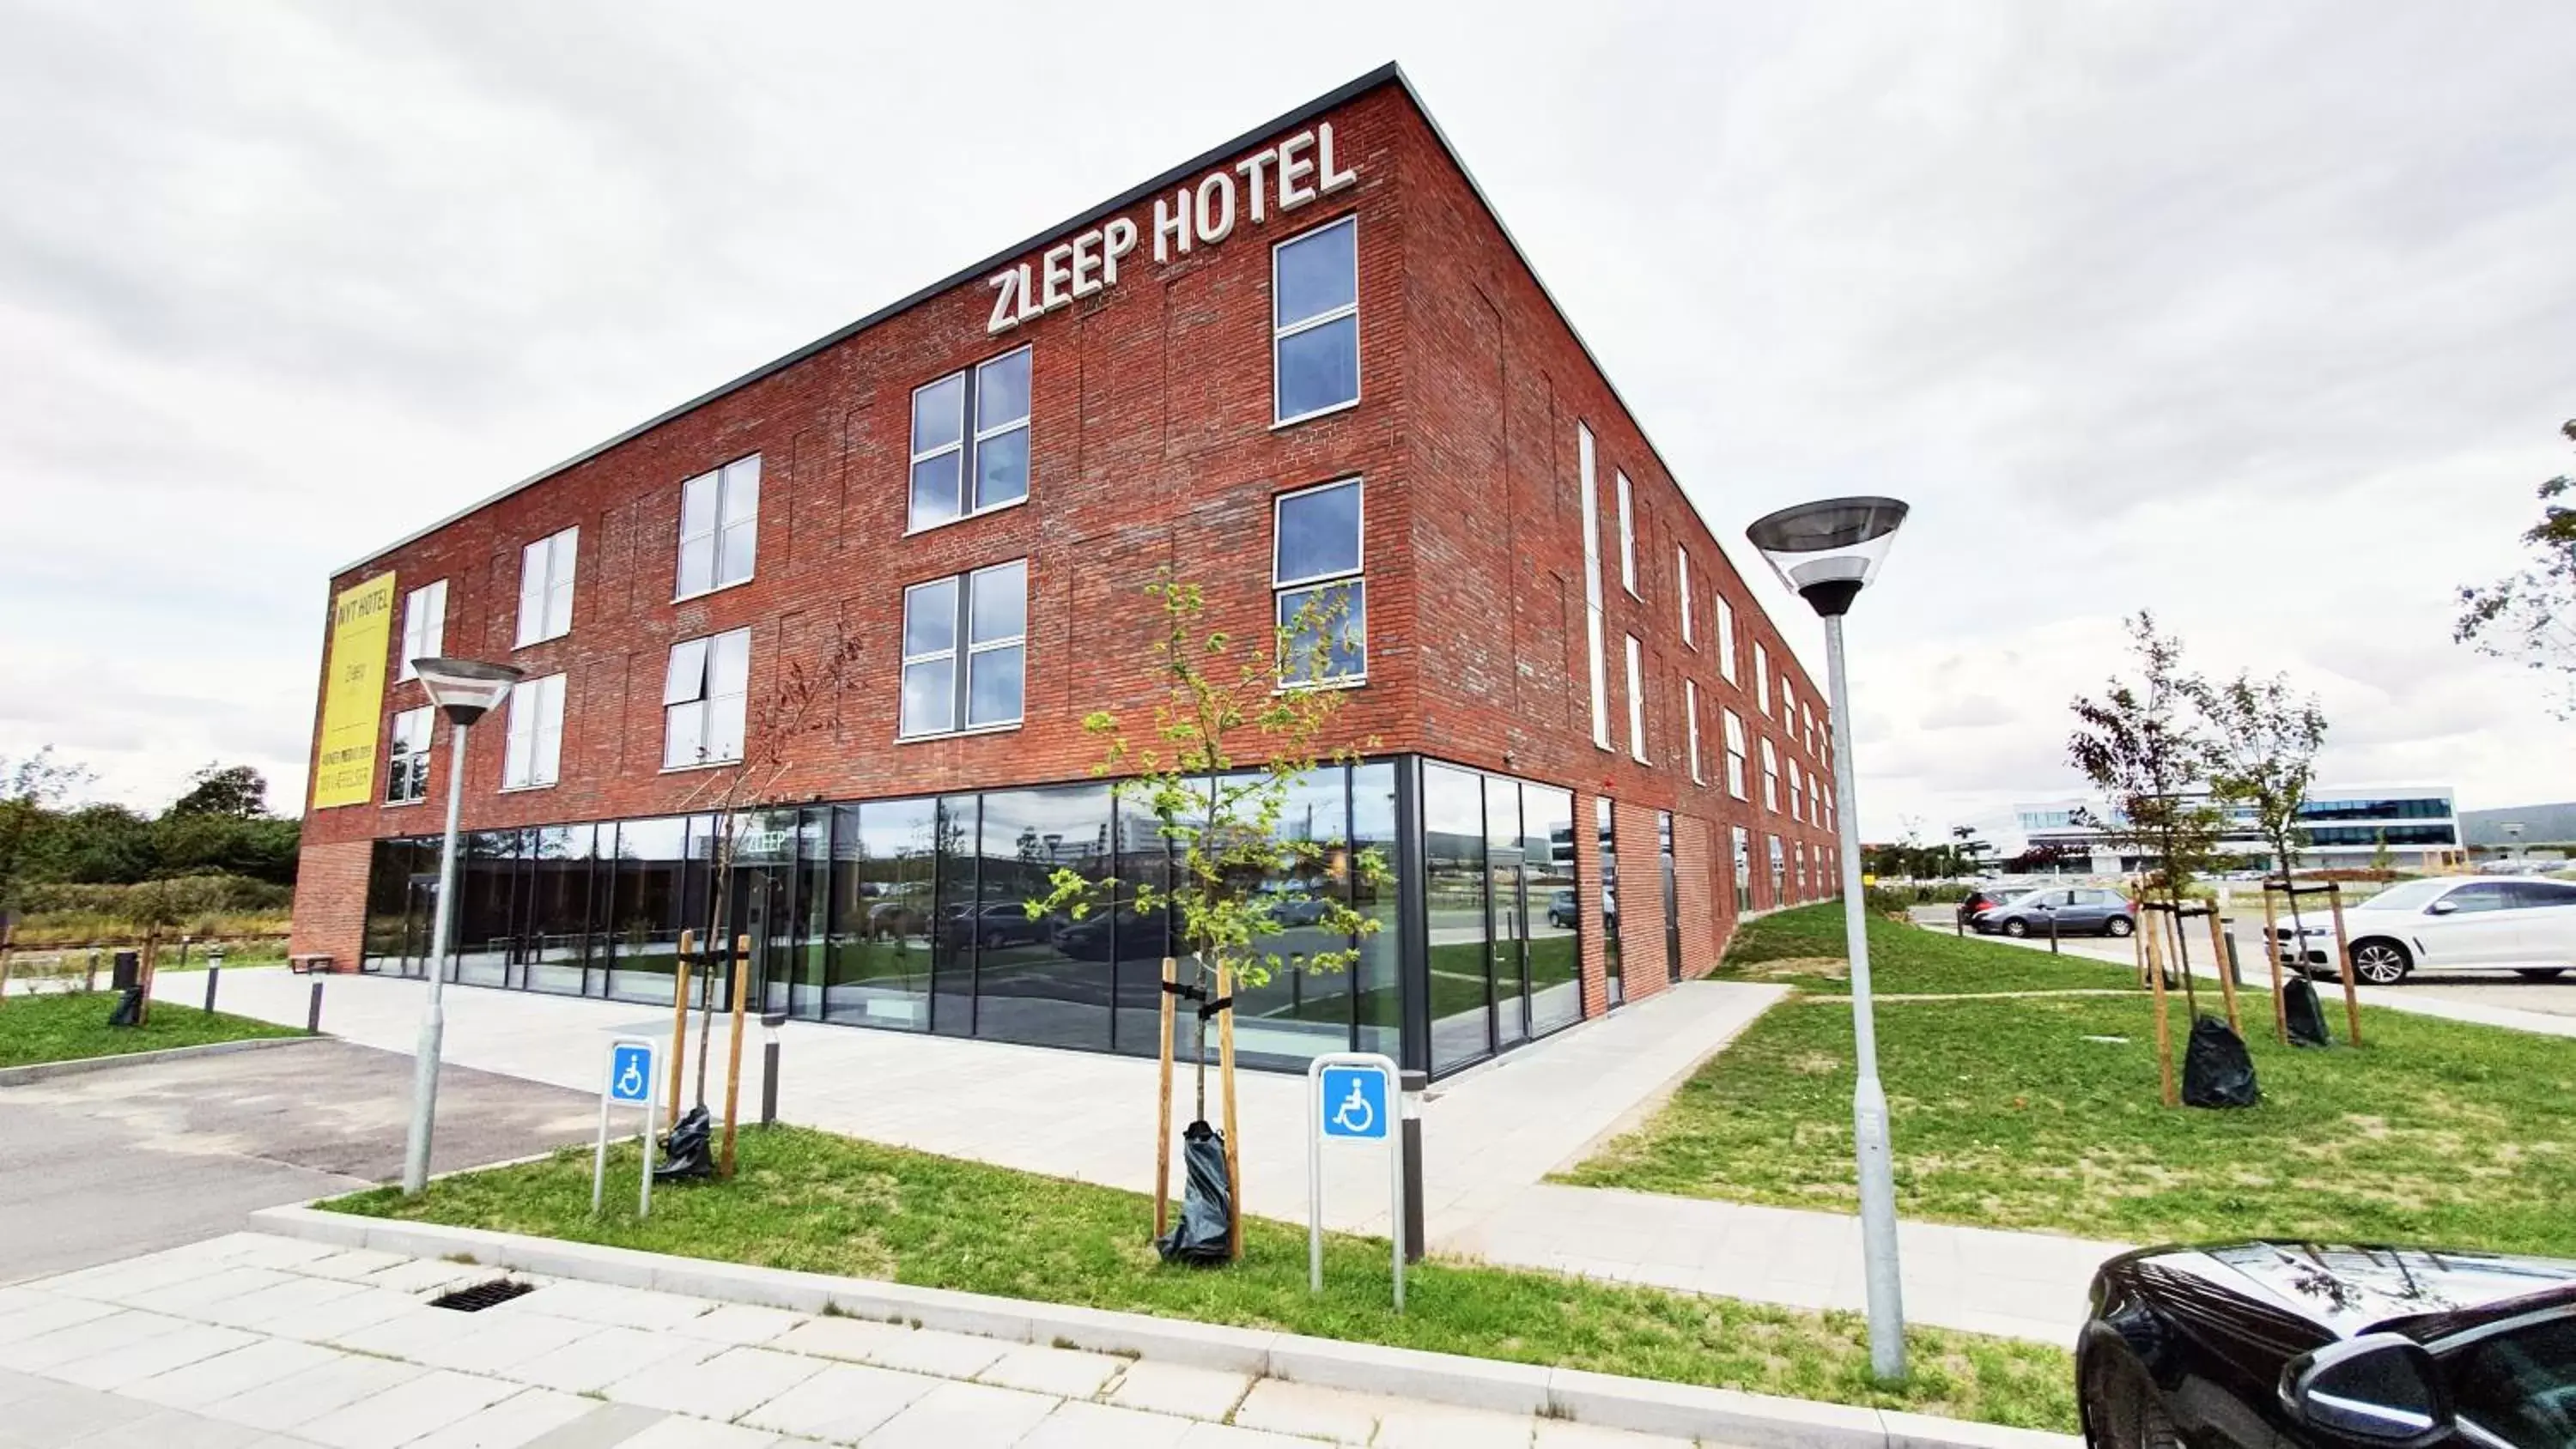 Property building in Zleep Hotel Aarhus Skejby